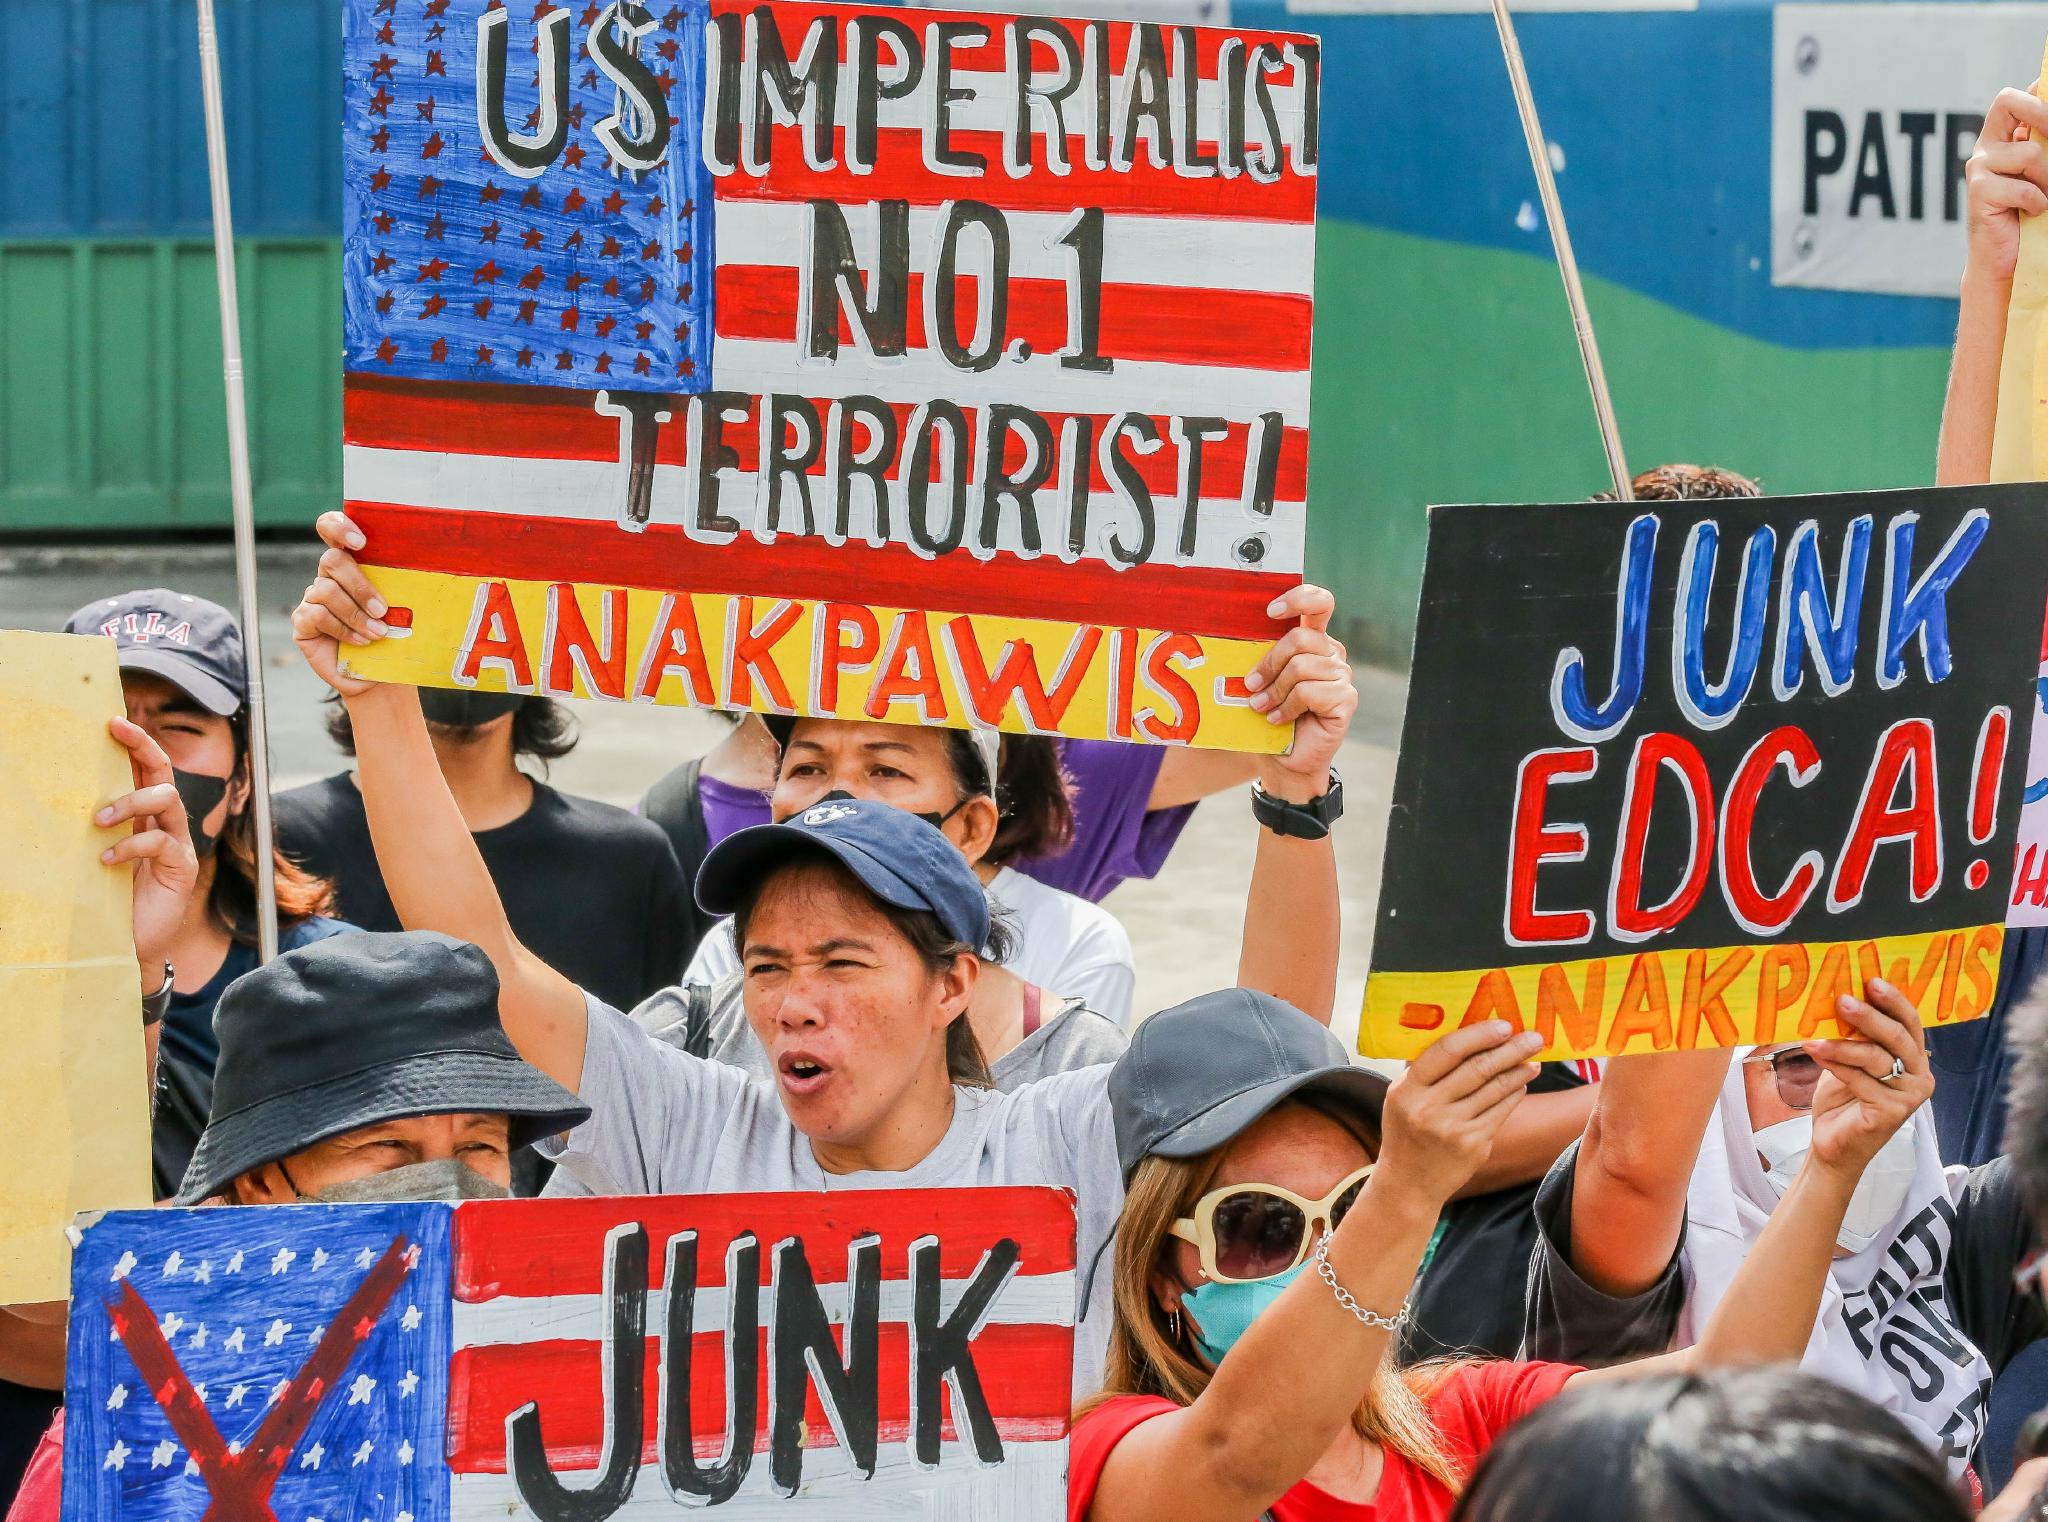 菲律宾民众抗议菲美联合军演